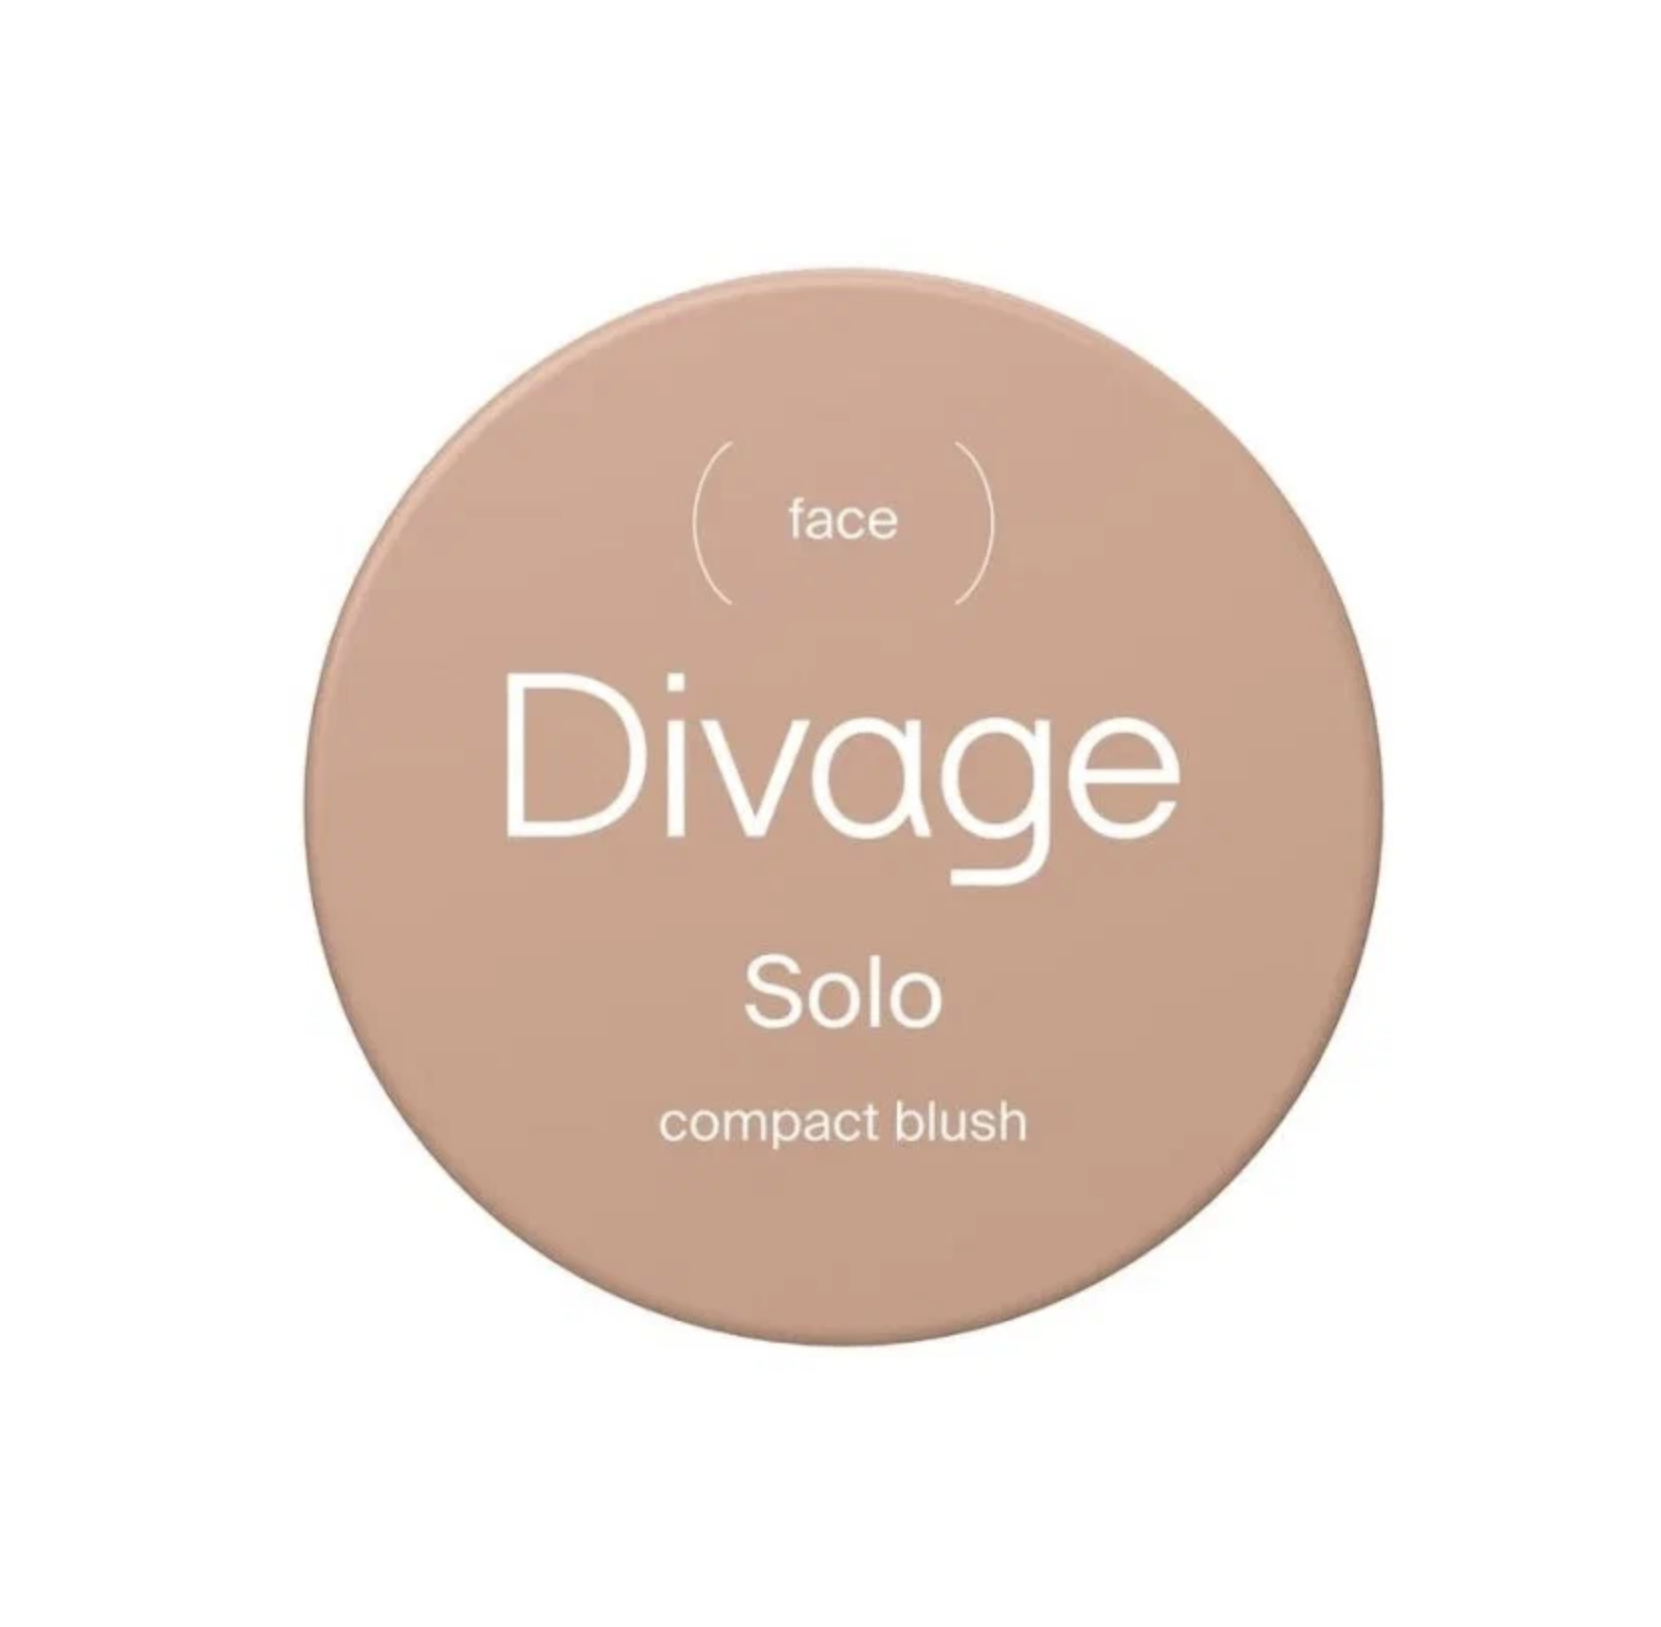   / Divage -     Solo compact blush  05, 2 